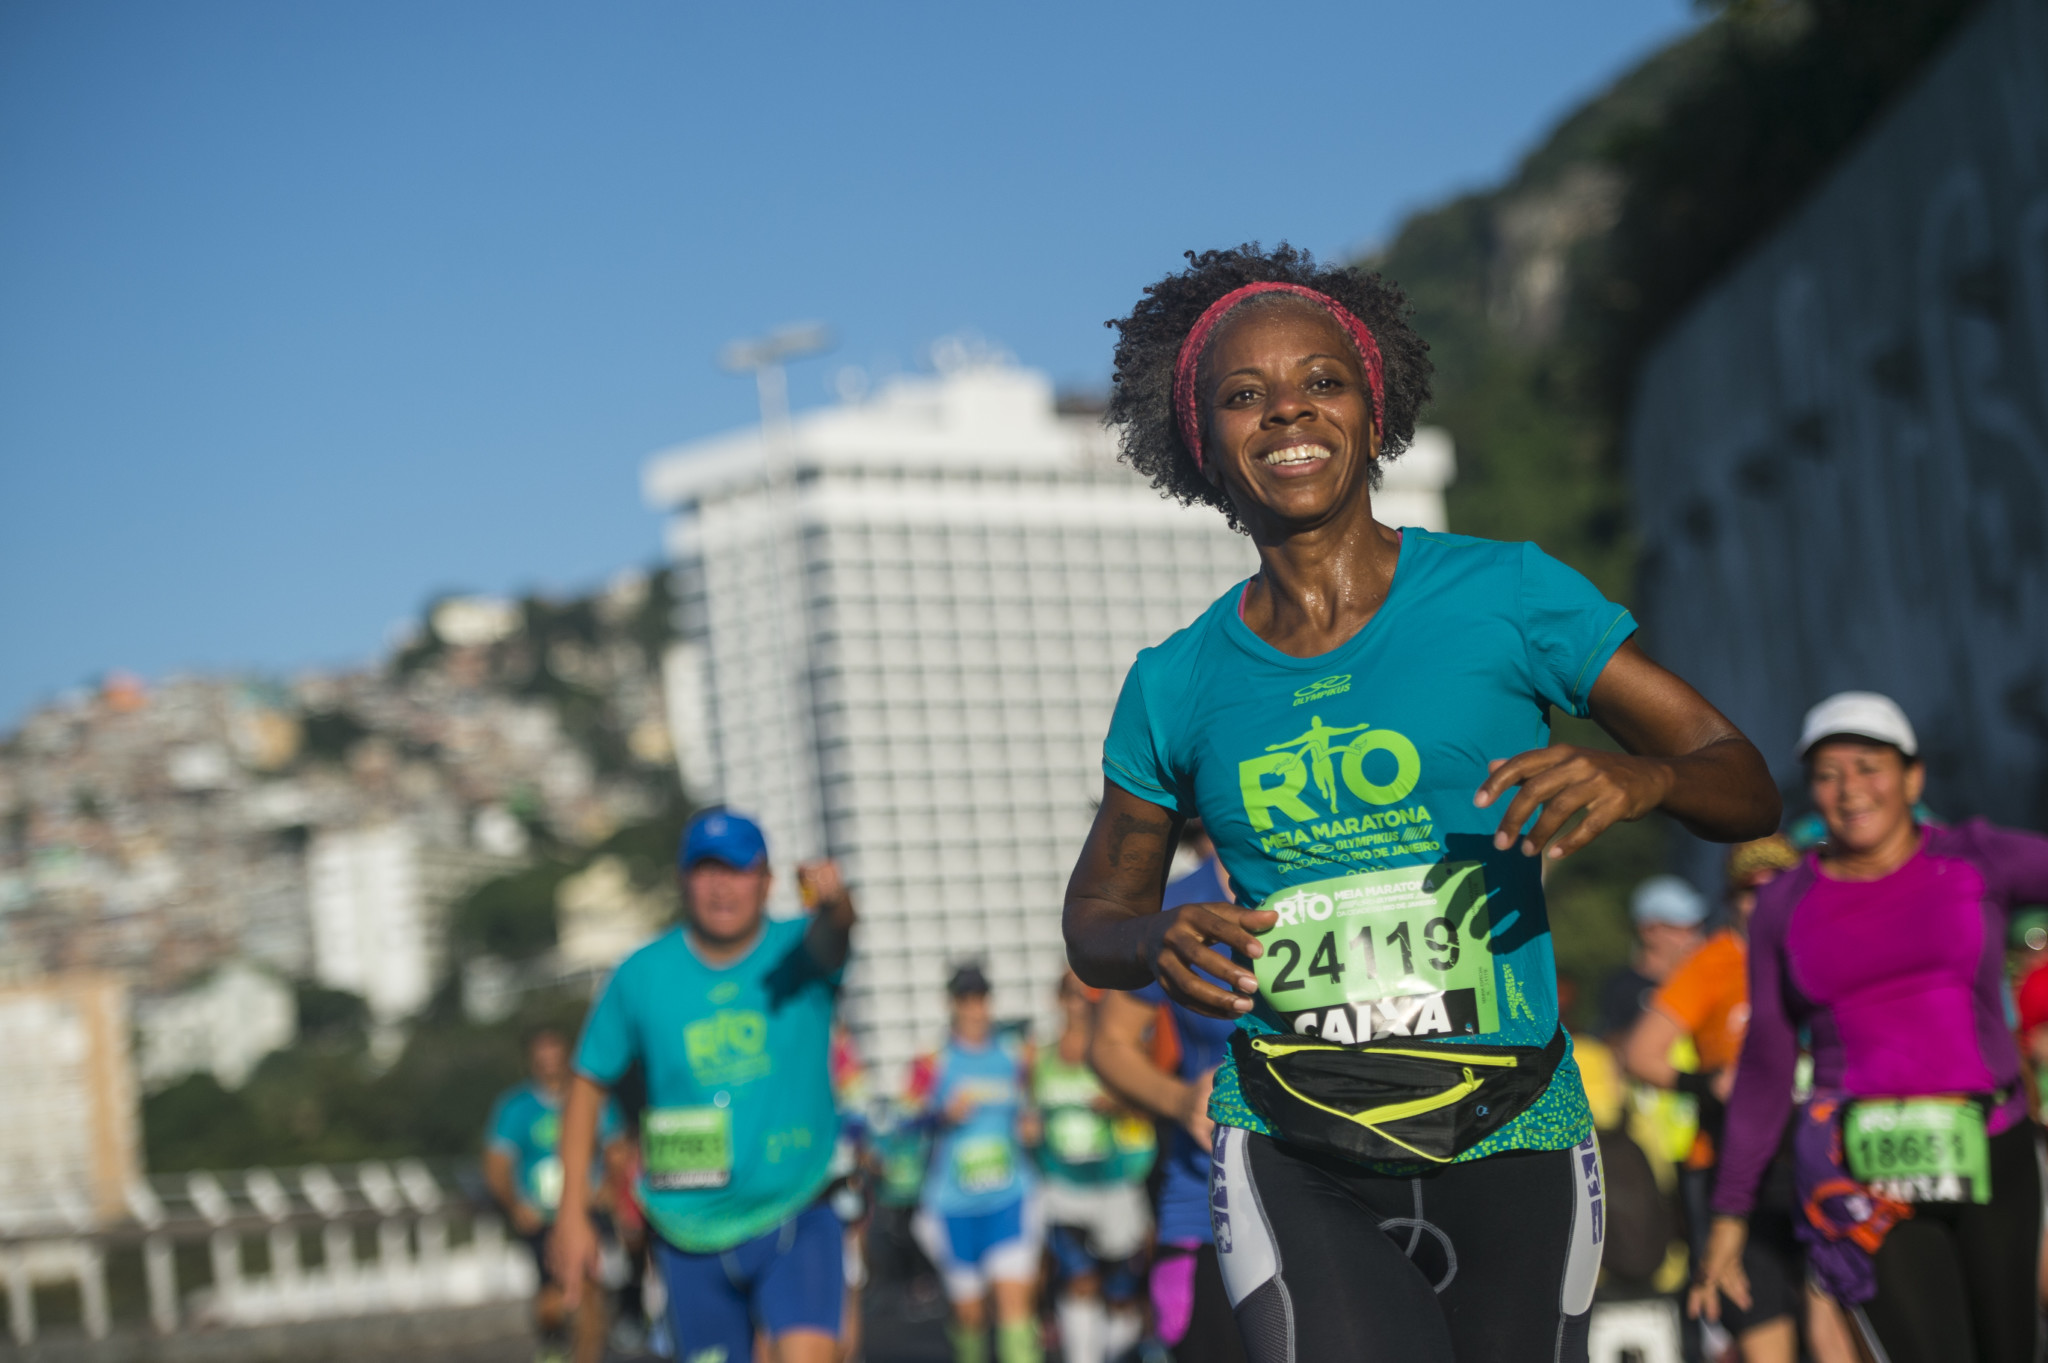 Eventos esportivos aquecem setor hoteleiro no Rio. Ocupação tem 18% de aumento, diz pesquisa